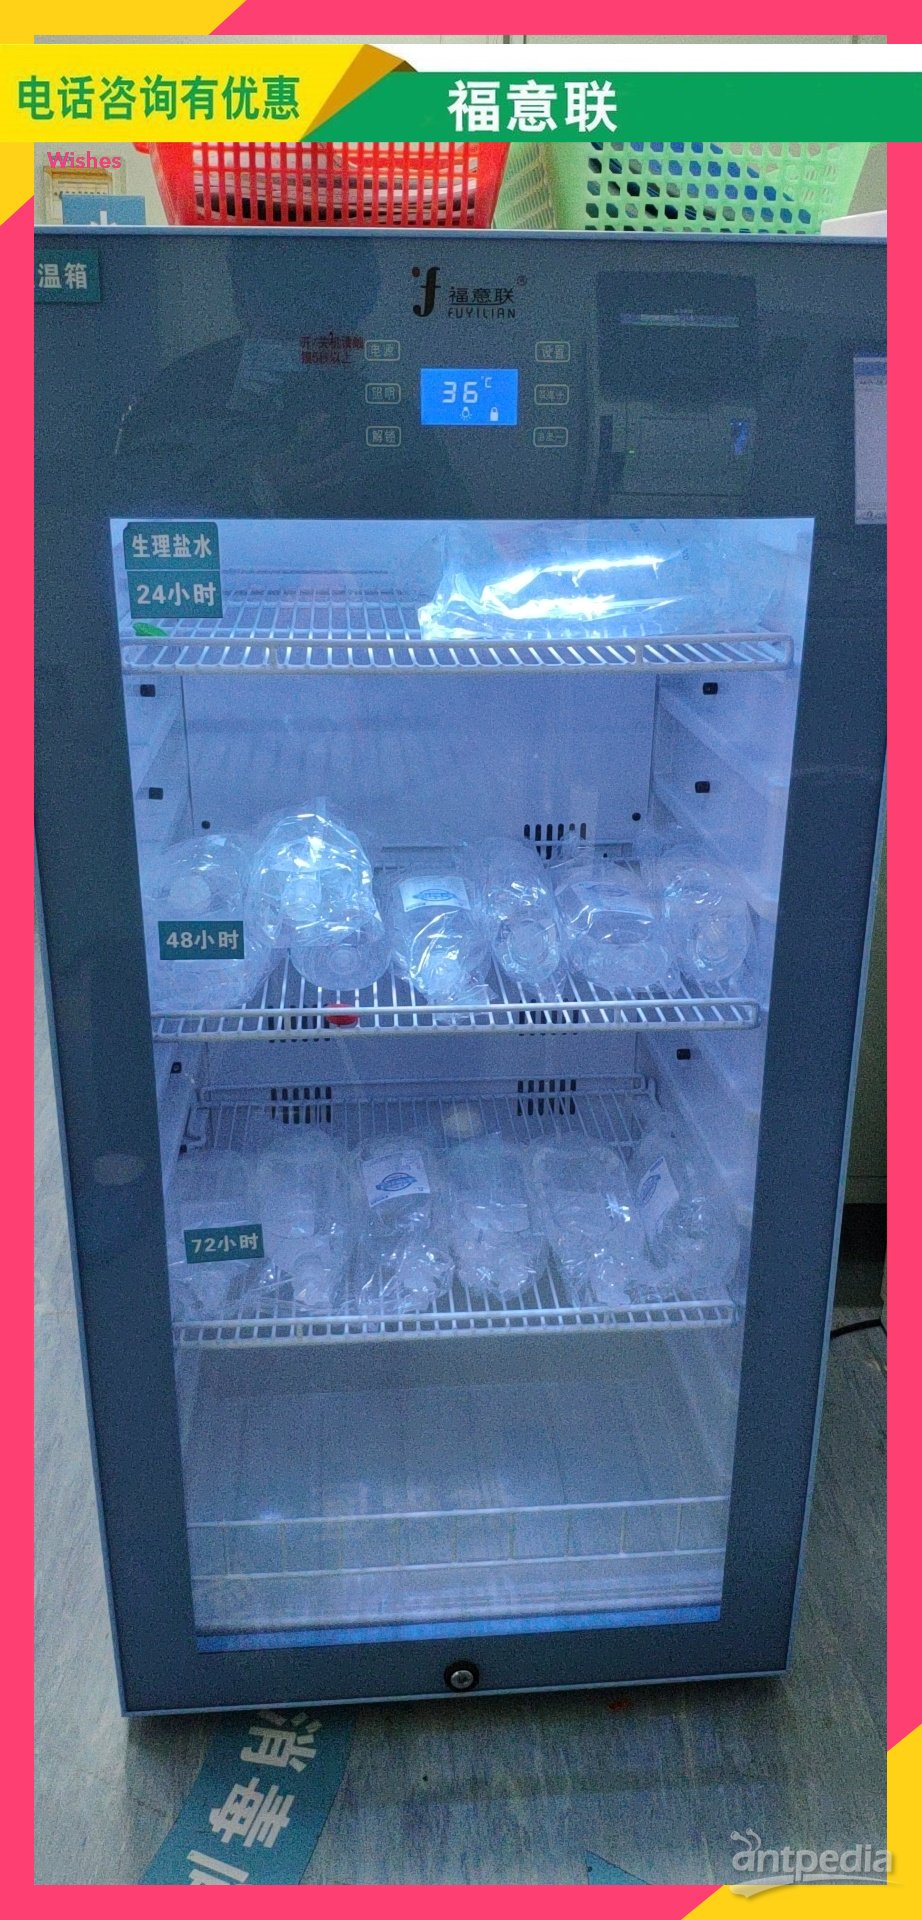 低温、冷疗设备尿液液样本冰箱介绍